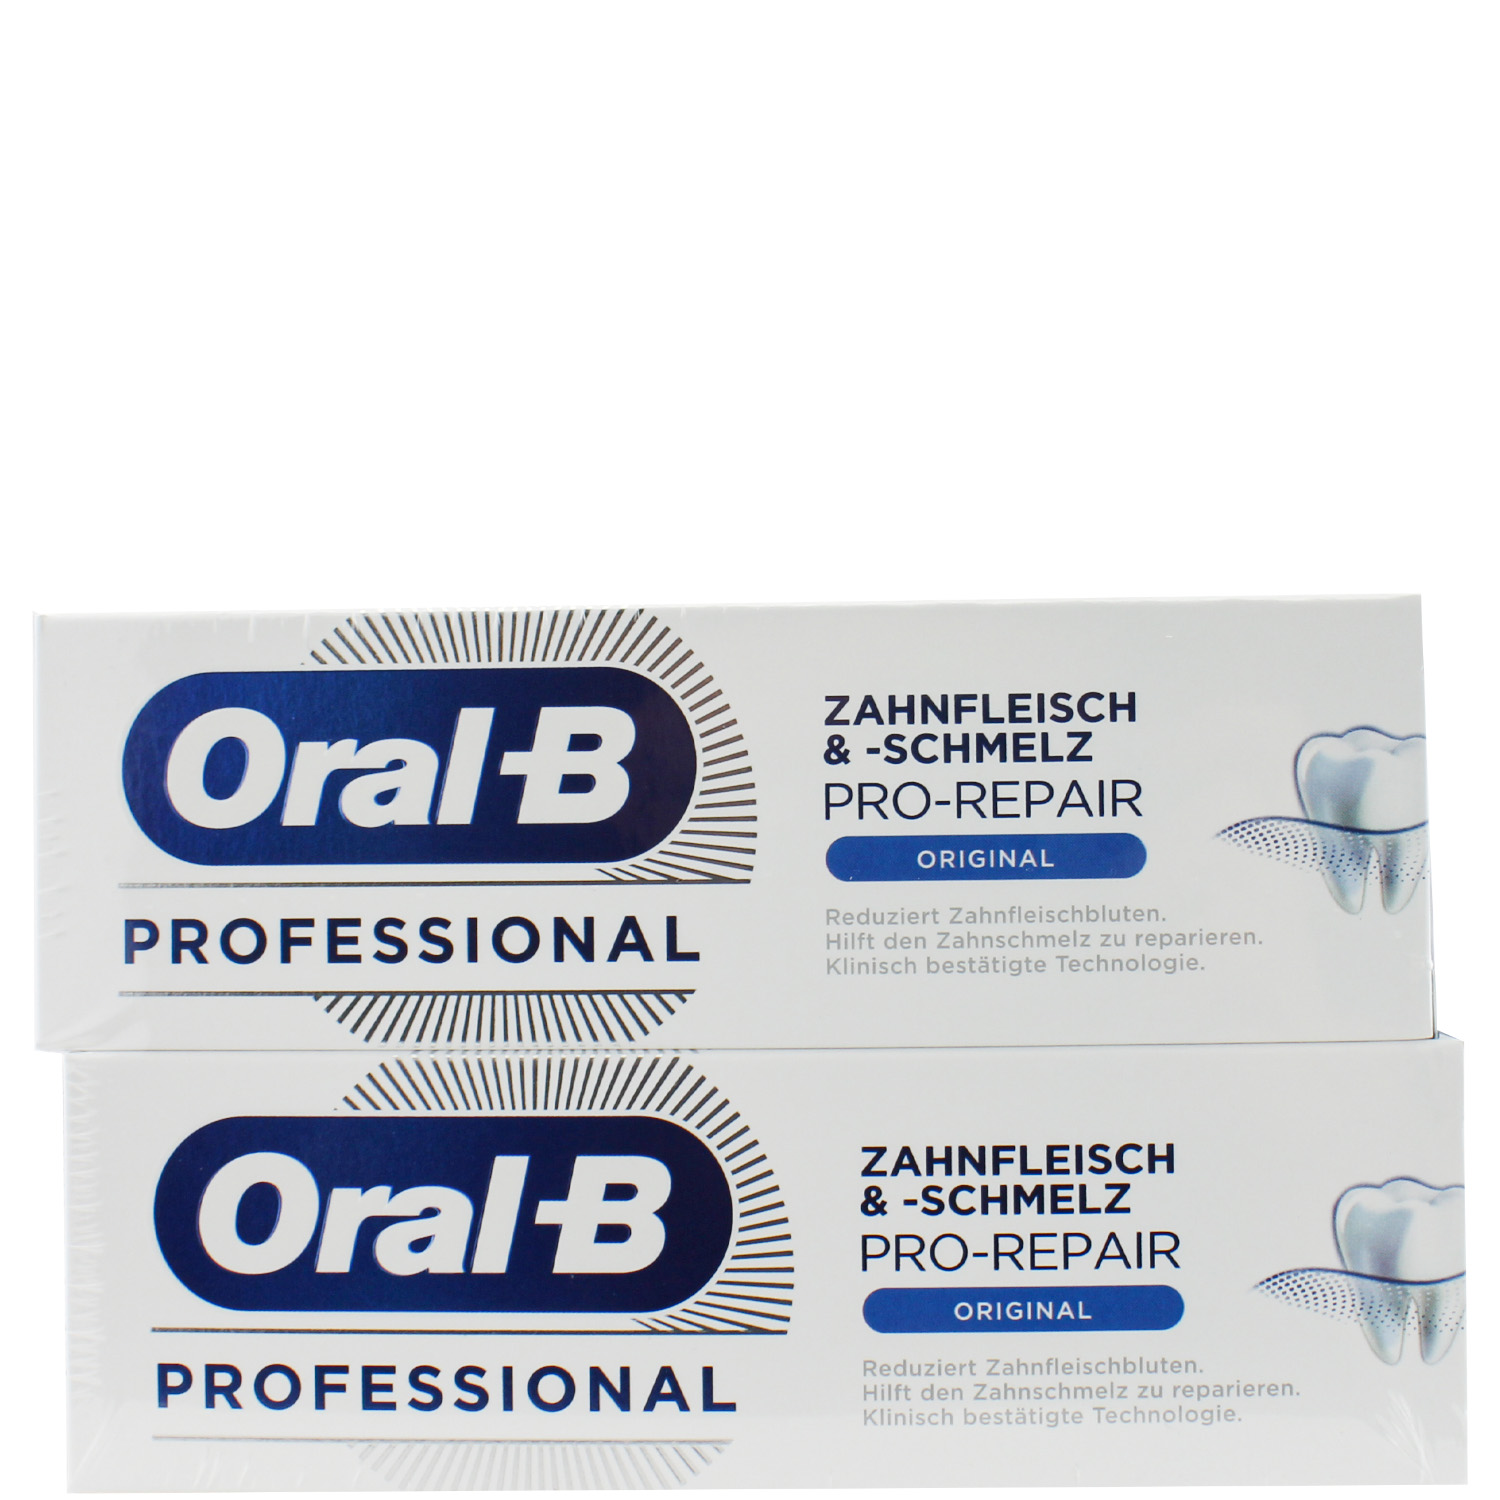 Oral-B Professional Zahnfleisch &-schmelz Pro Repair Original 2x75ml